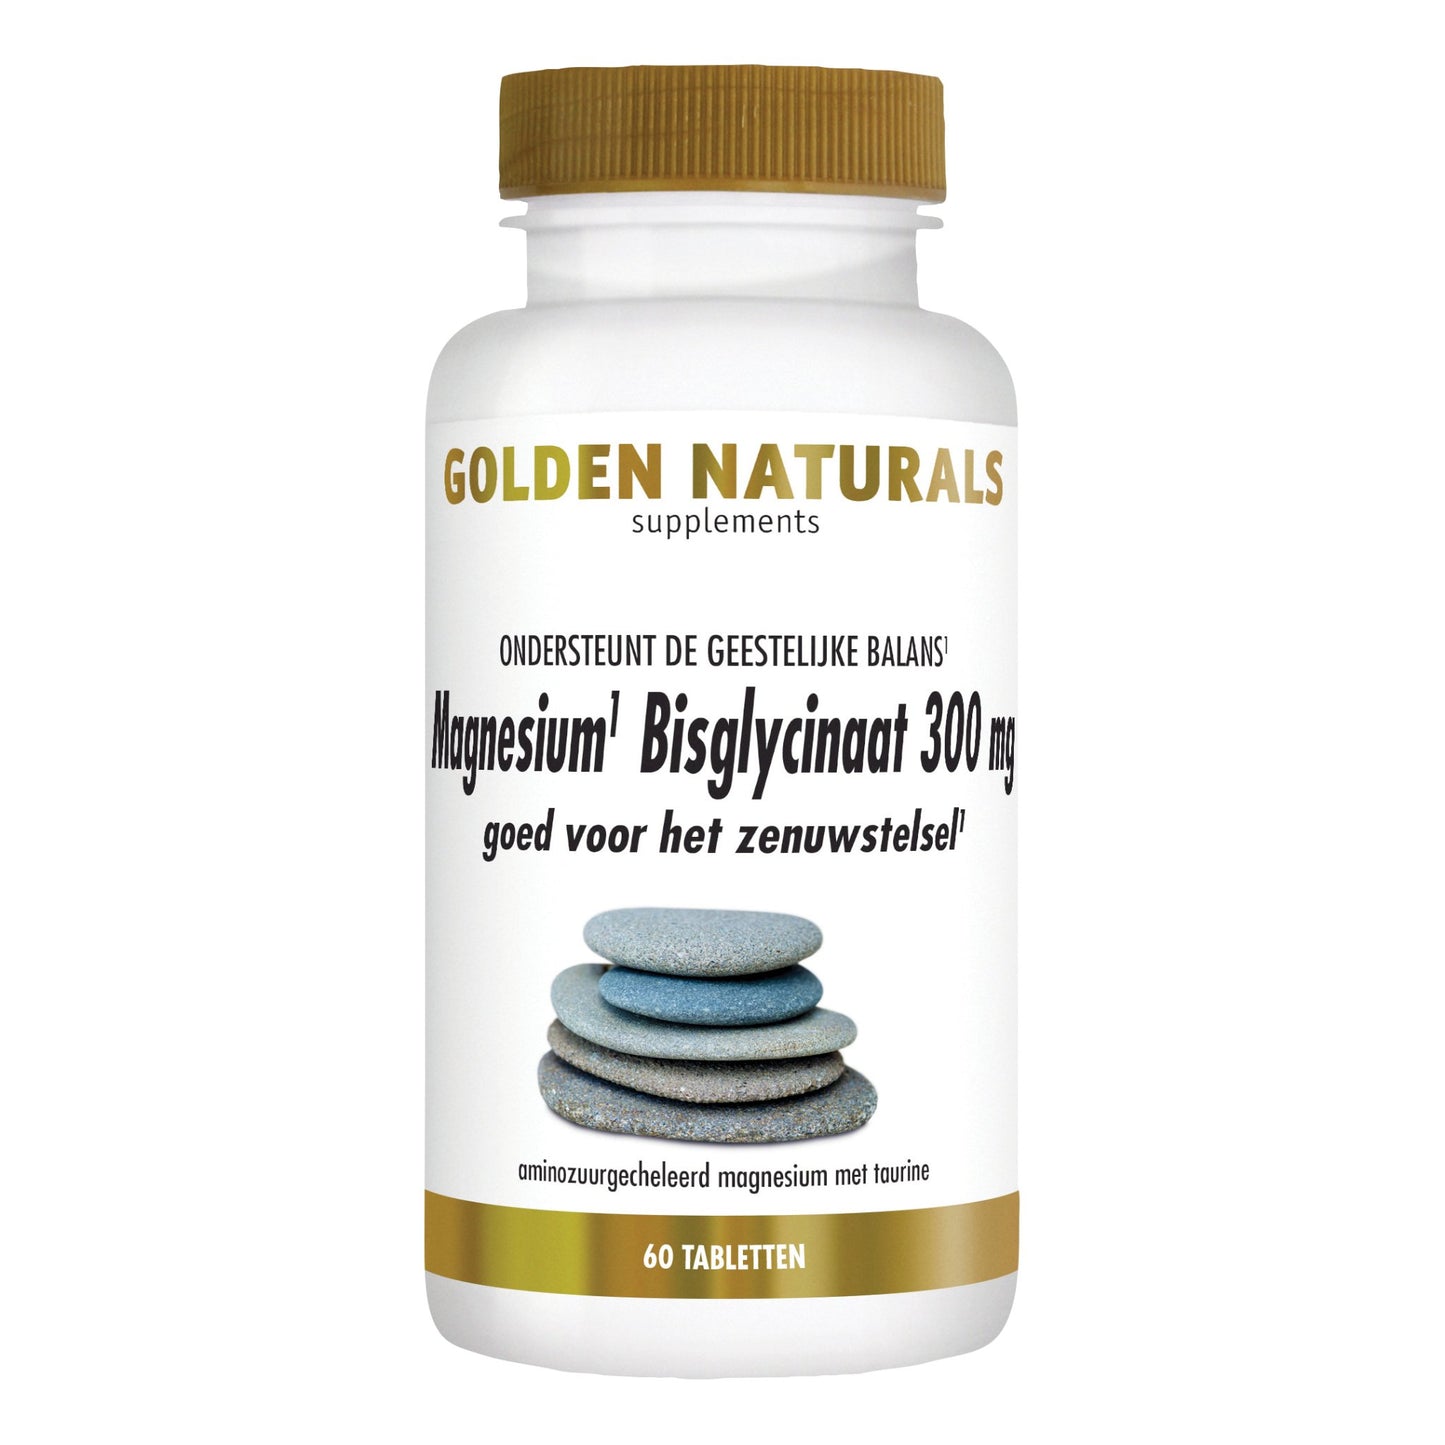 Magnesium Bisglycinaat 300 mg - 60 - veganistische tabletten Supplement Golden Naturals   